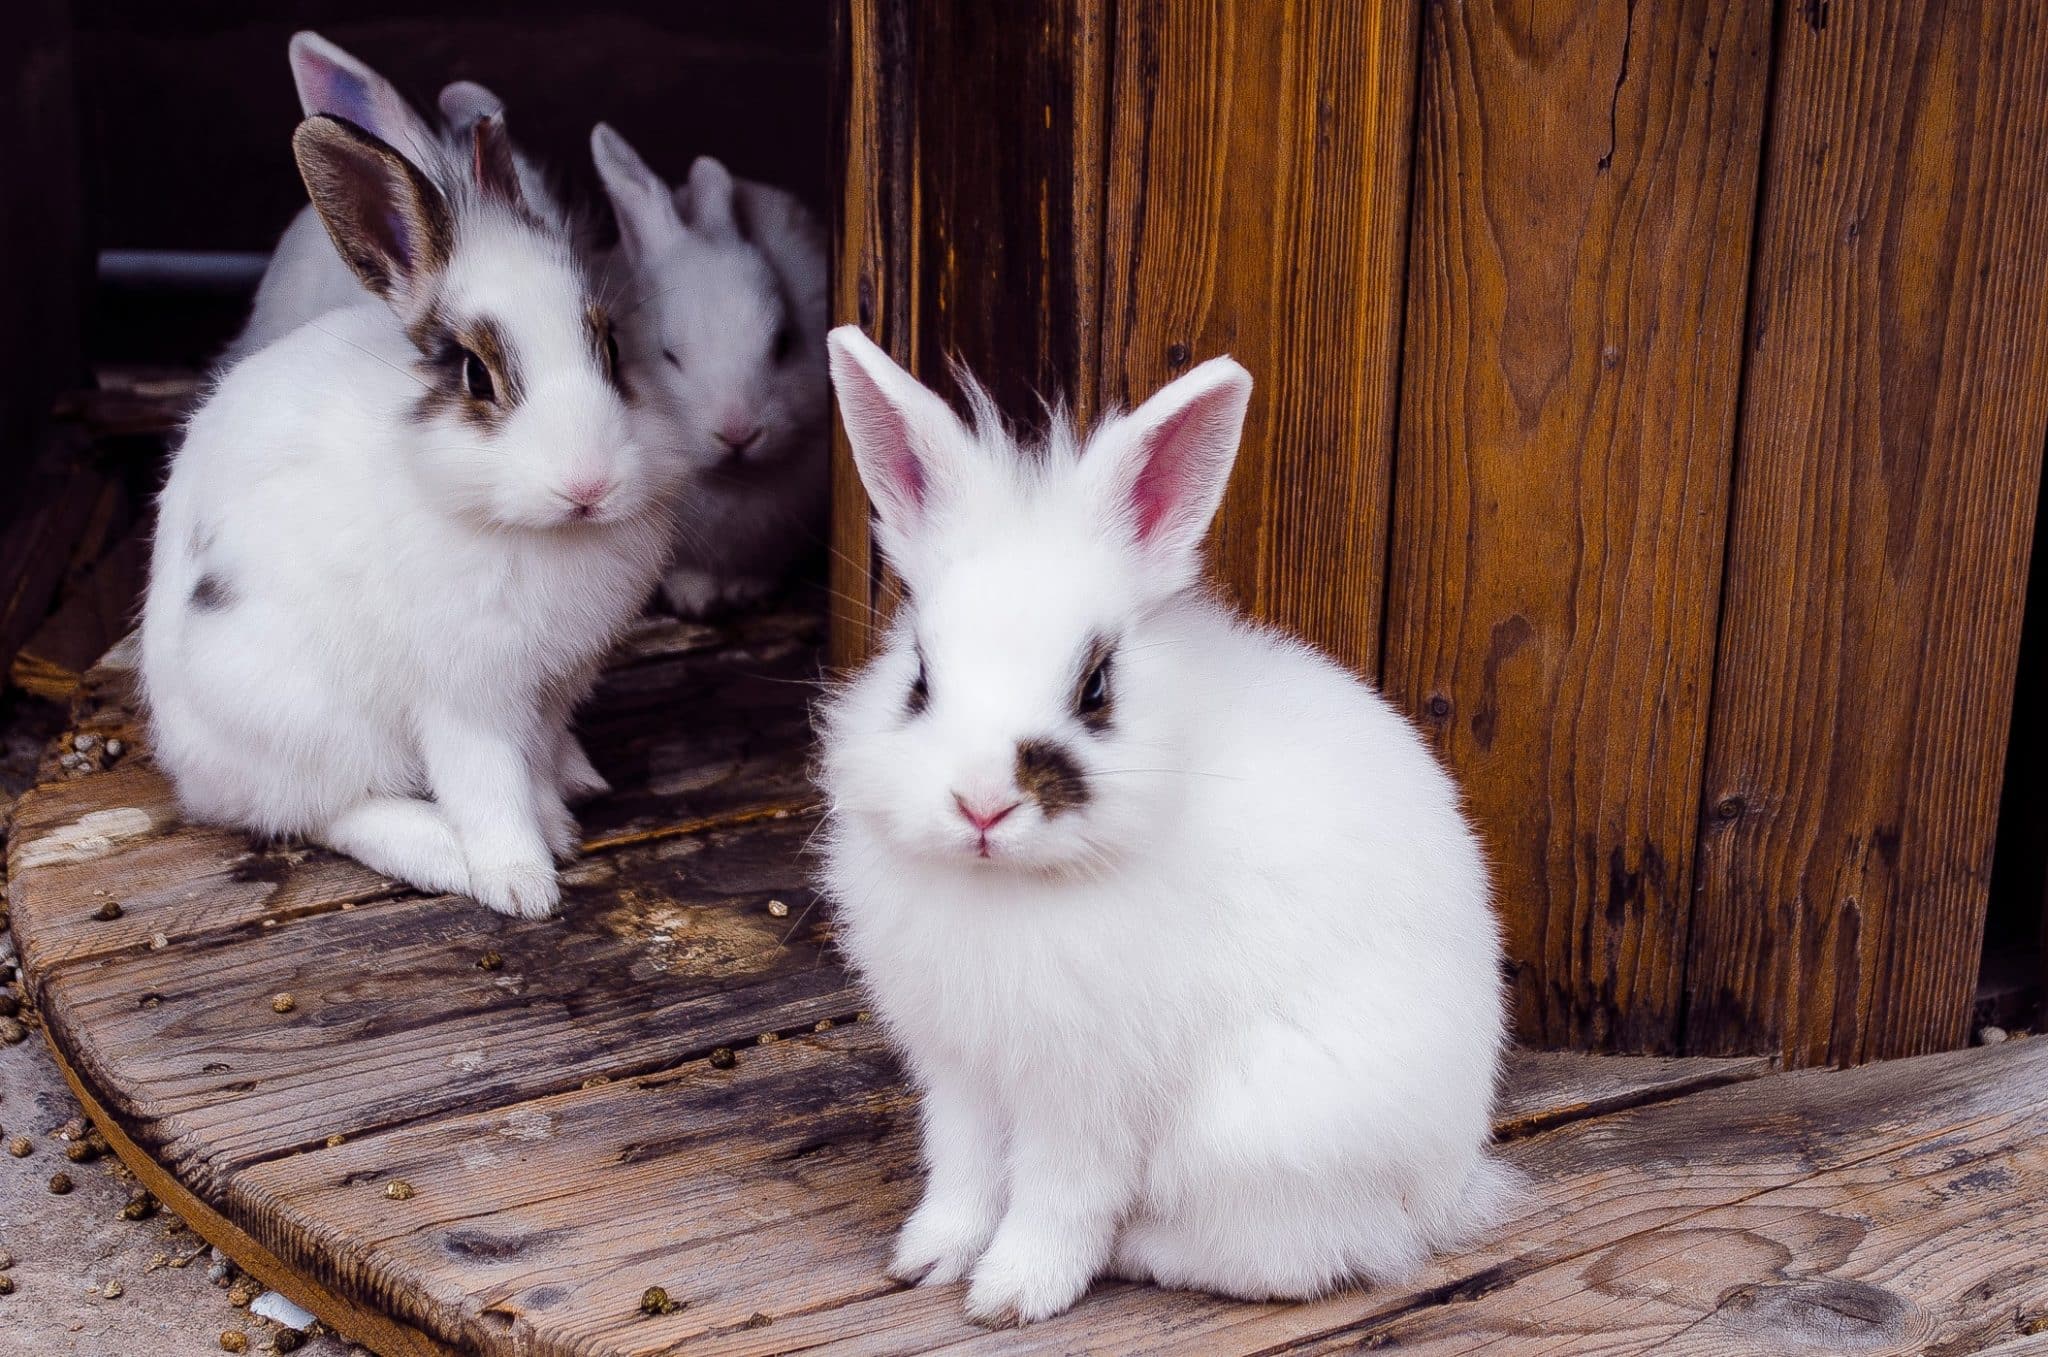 Bei der Kaninchenzucht sollten viele Dinge beachtet werden. Foto Micomaco via Twenty20